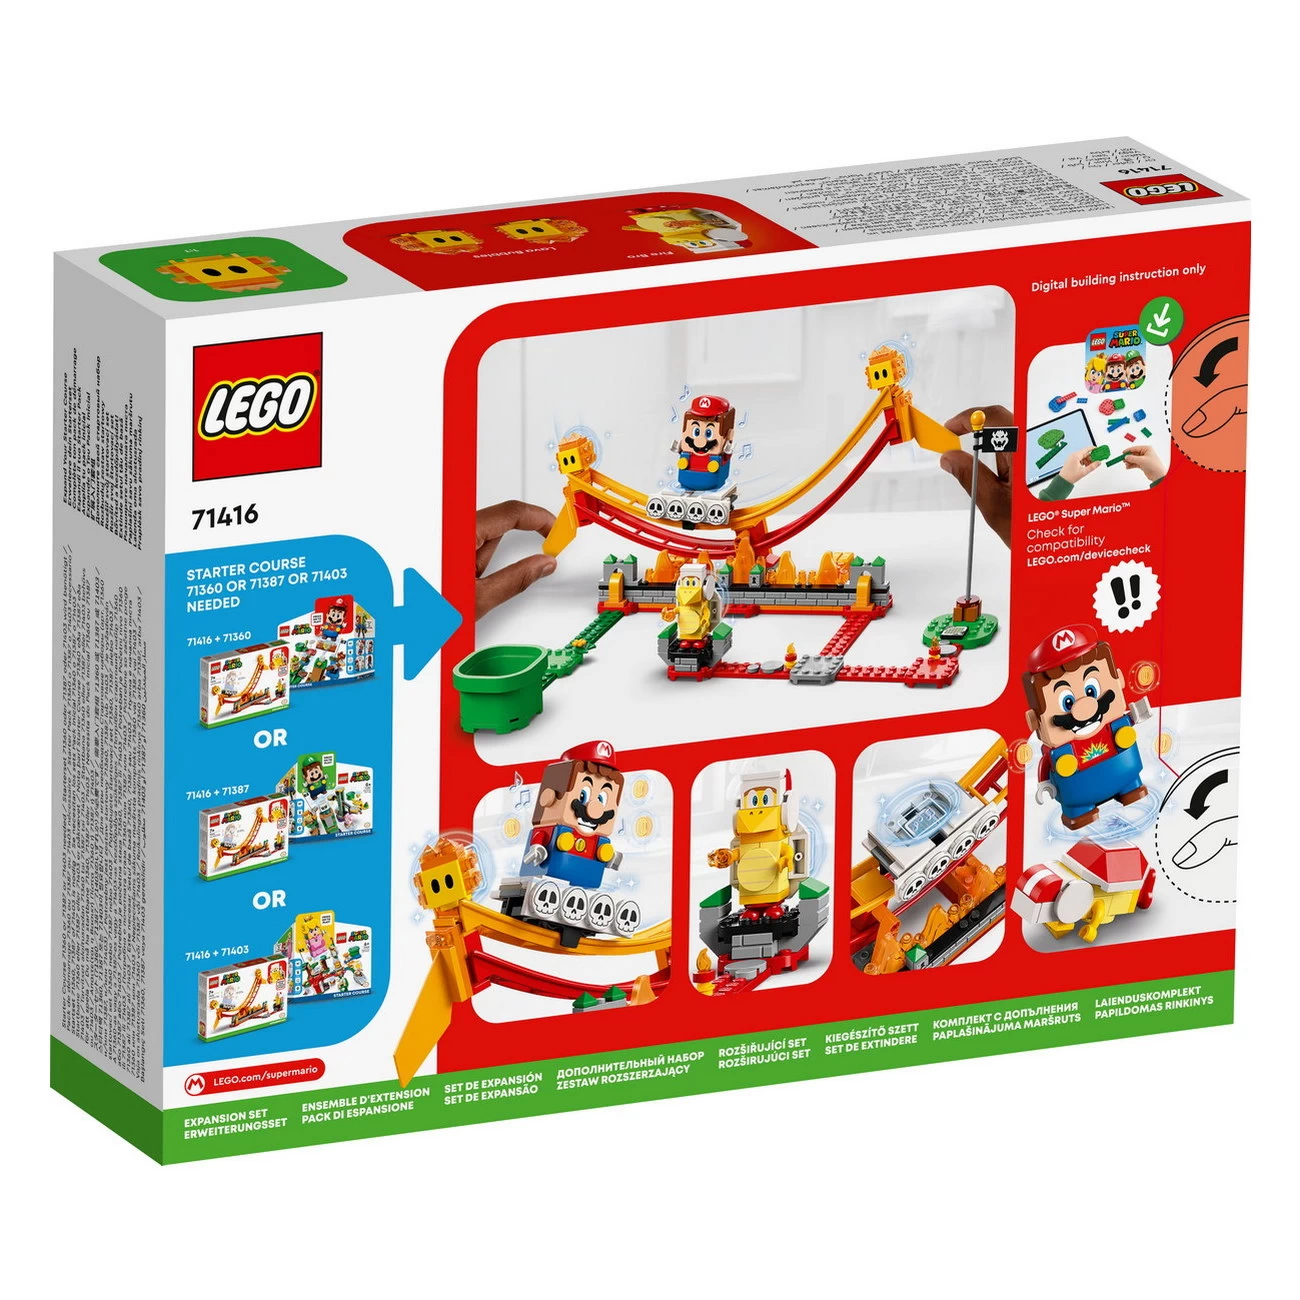 LEGO Super Mario - Lavawelle-Fahrgeschäft - Erweiterungsset (71416)